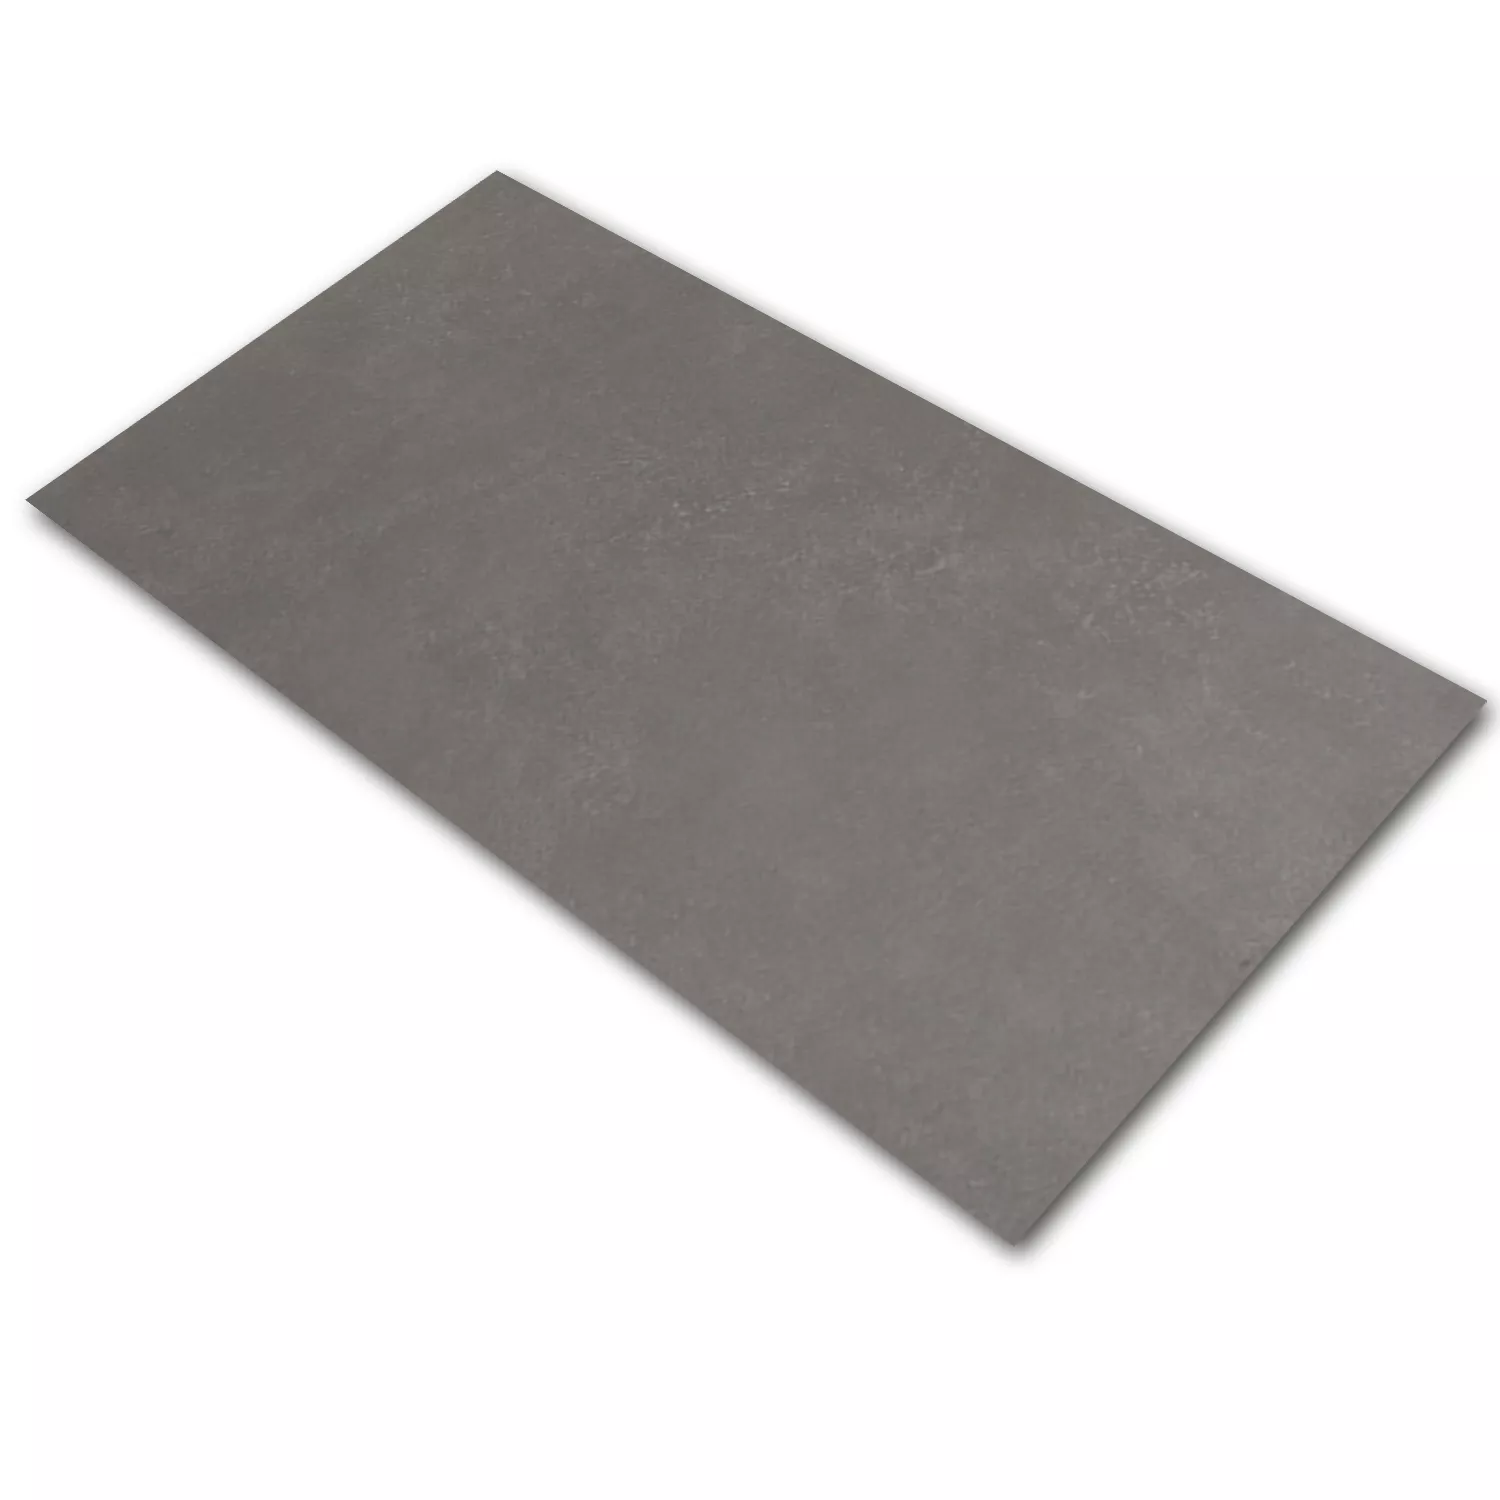 Sample Floor Tiles Hayat Dark Grey 30x60cm